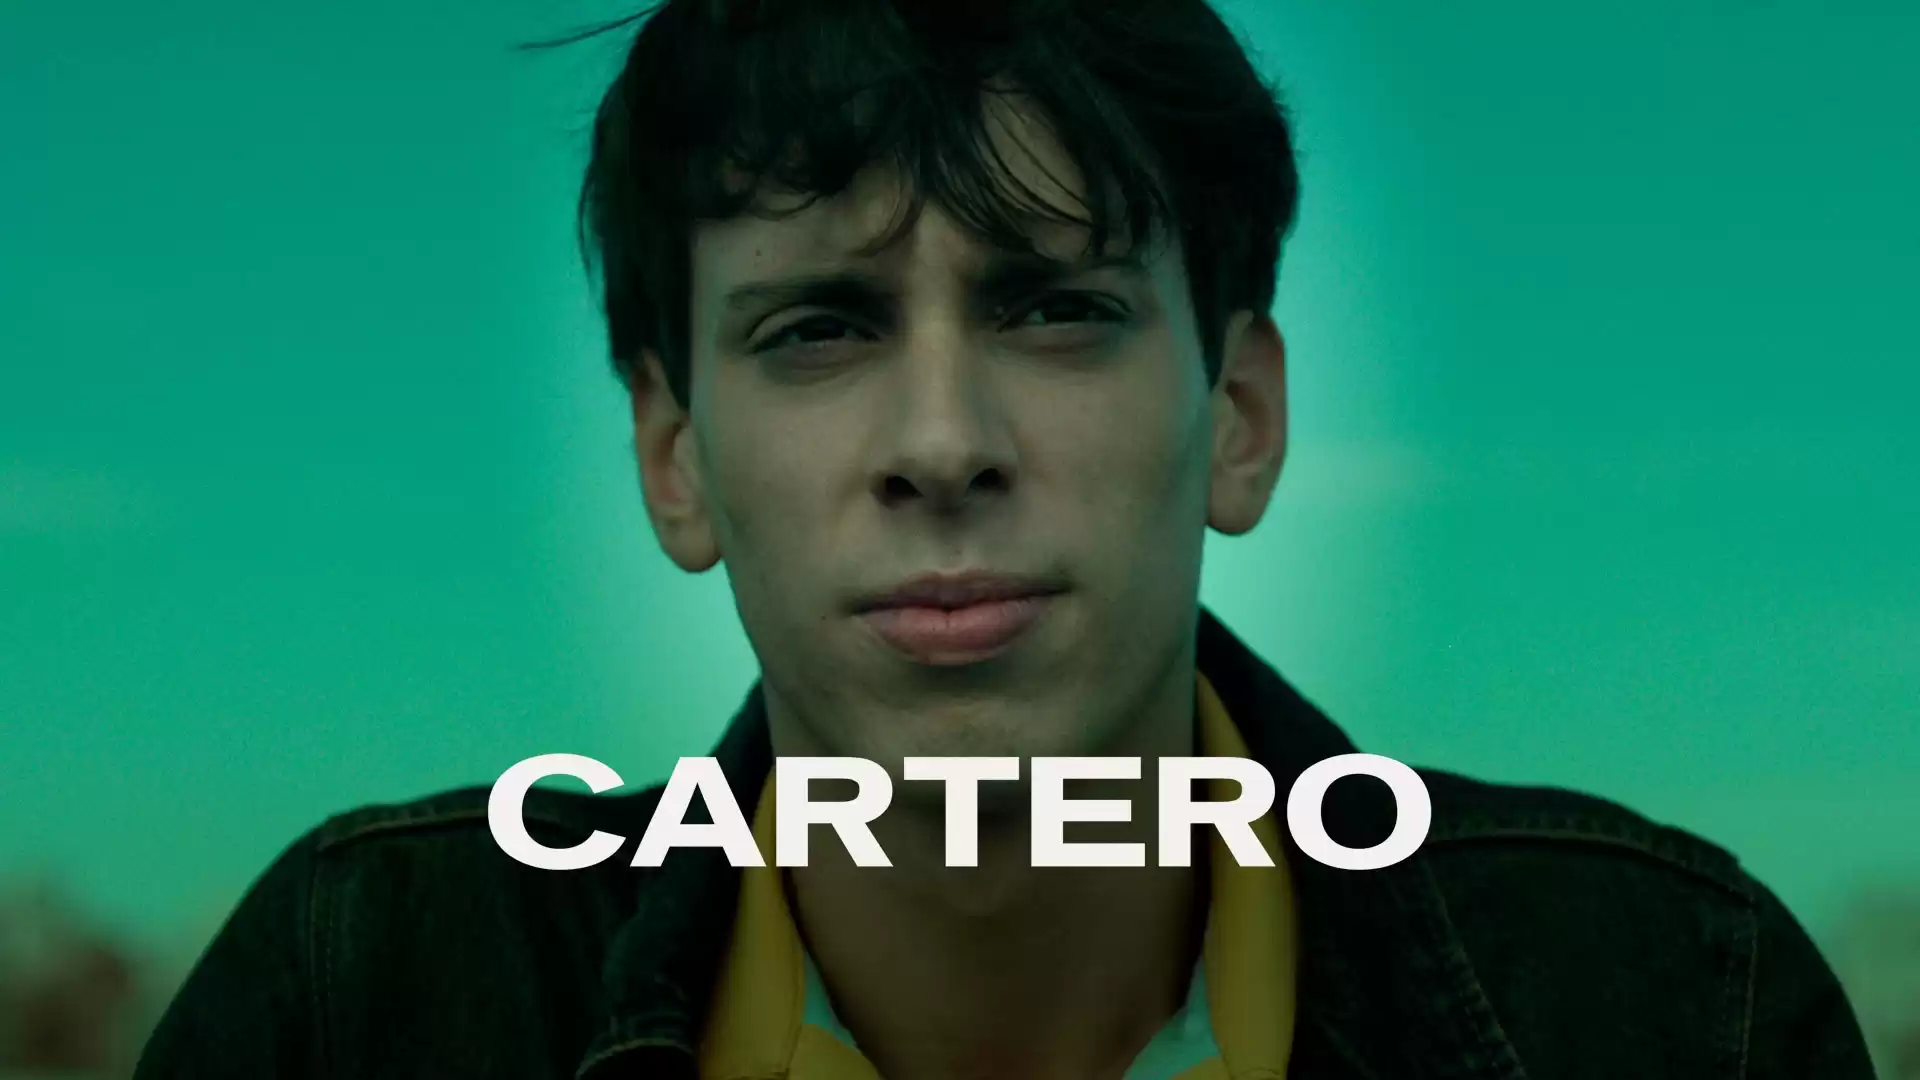 Cartero